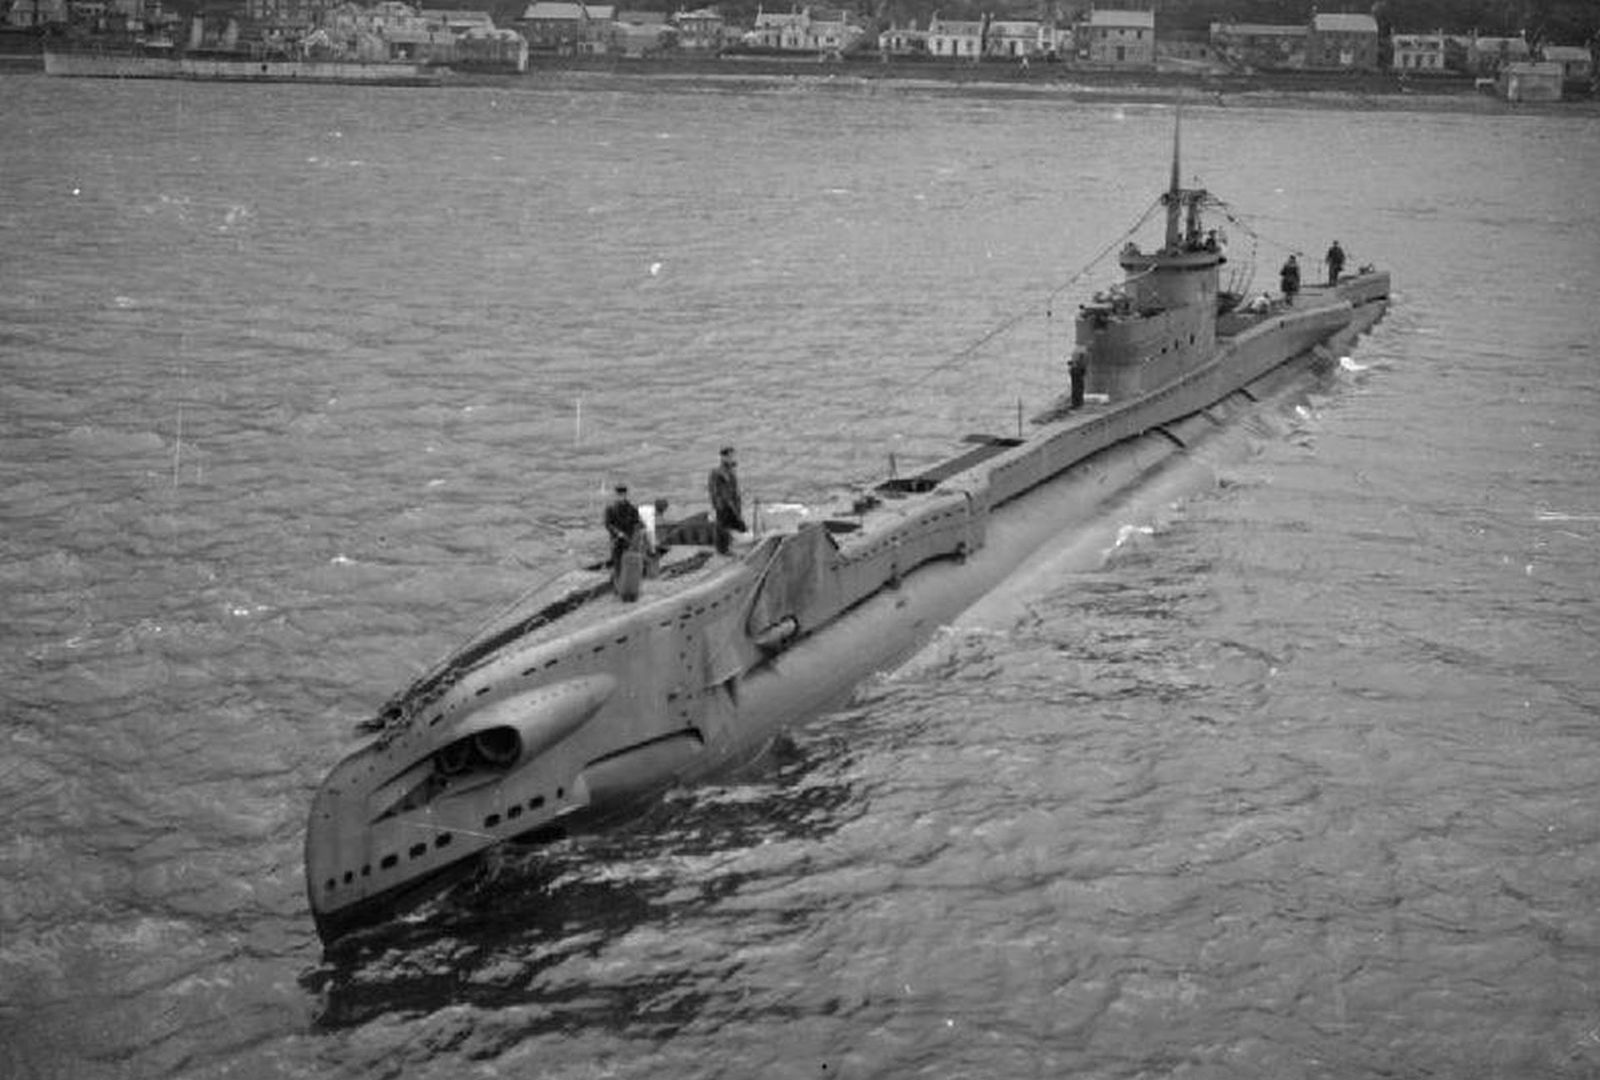 Znaleźli łódź podwodną z czasów II wojny